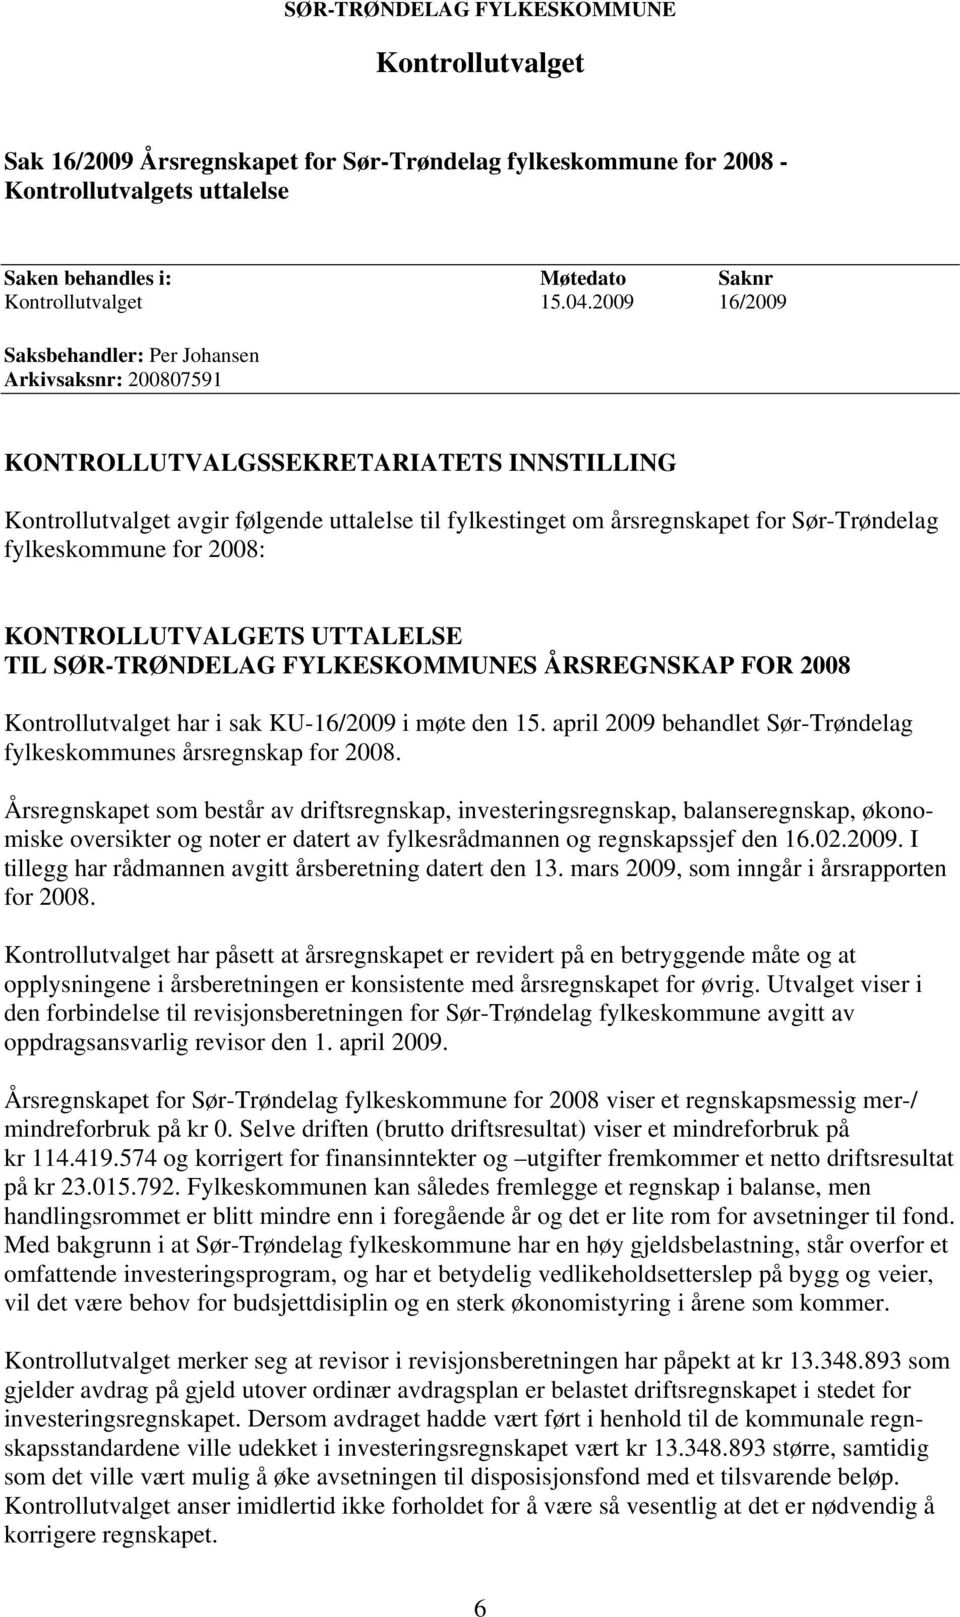 UTTALELSE TIL SØR-TRØNDELAG FYLKESKOMMUNES ÅRSREGNSKAP FOR 2008 Kontrollutvalget har i sak KU-16/2009 i møte den 15. april 2009 behandlet Sør-Trøndelag fylkeskommunes årsregnskap for 2008.